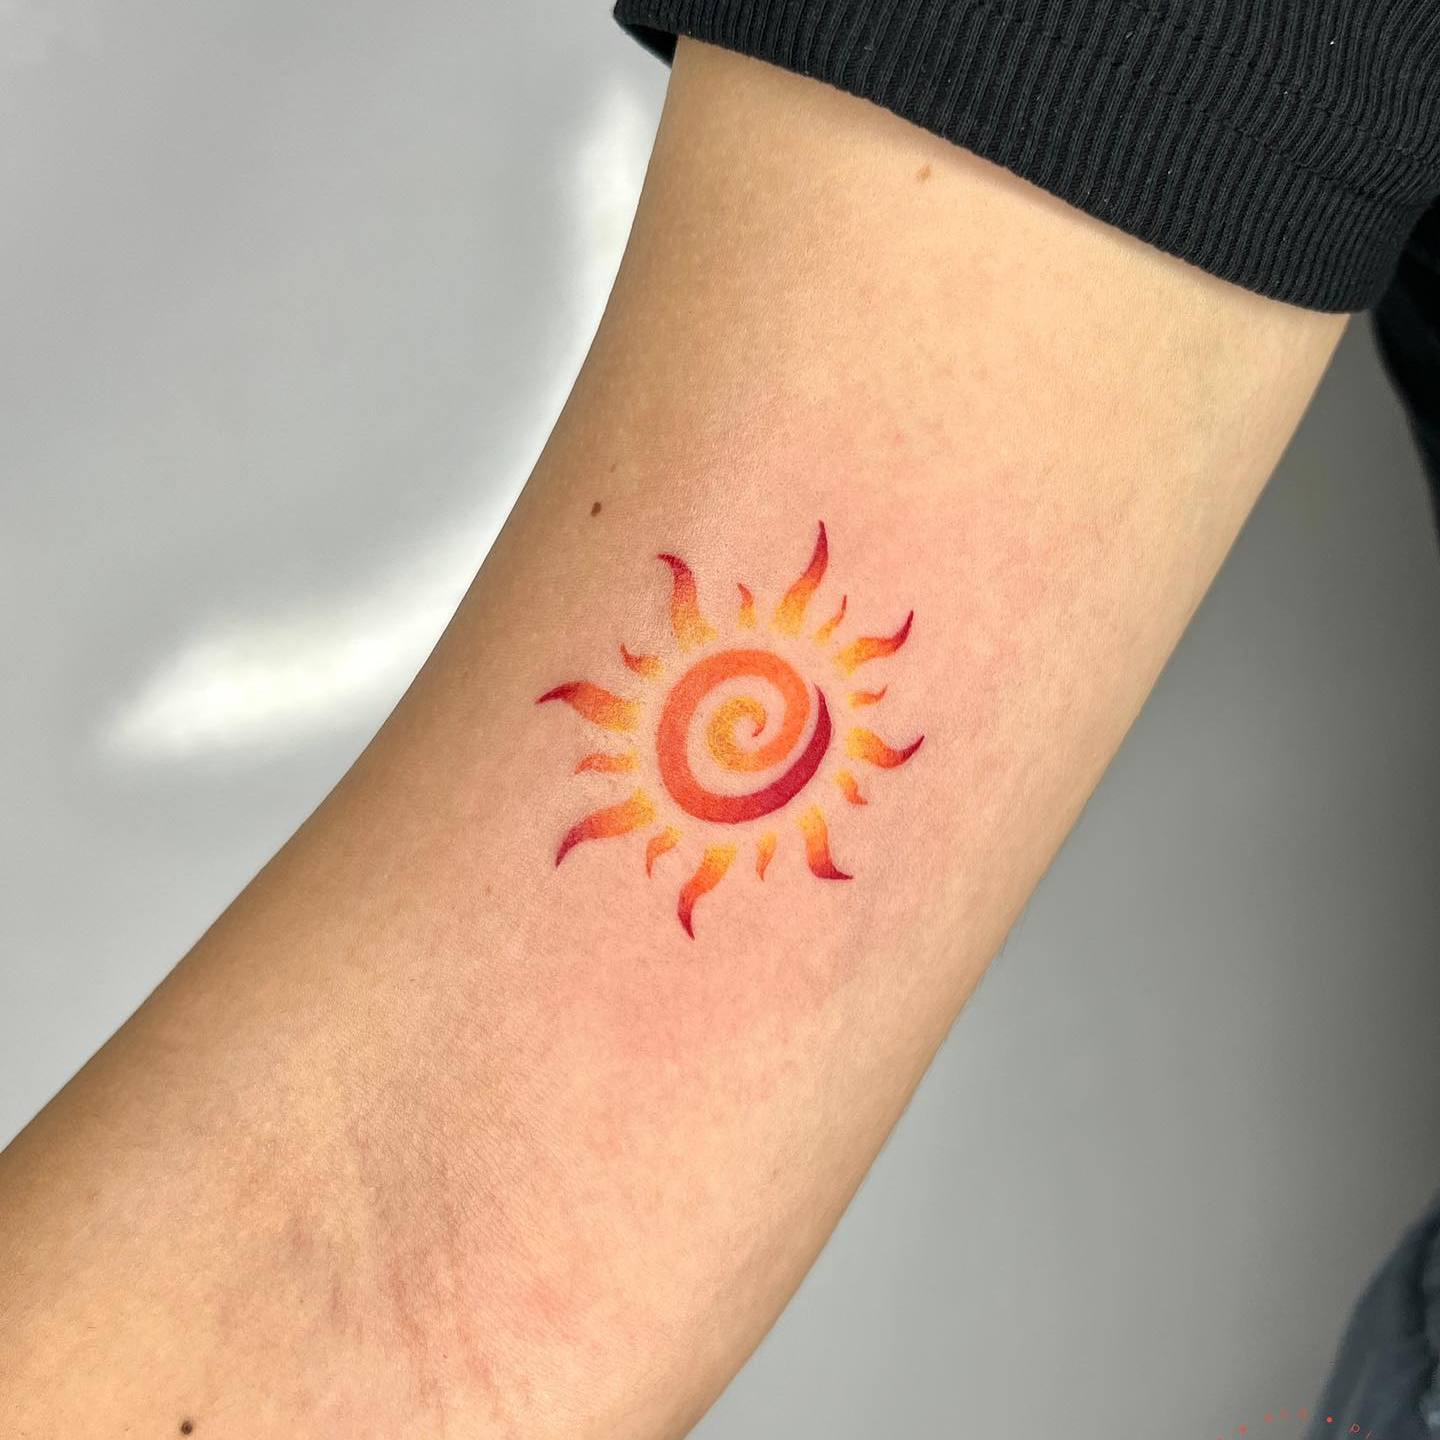 Akwarelowy tatuaż przedstawiający małe pogańskie słońce, wykonany tuszami w kolorze czerwonym, pomarańczowym i żółtym